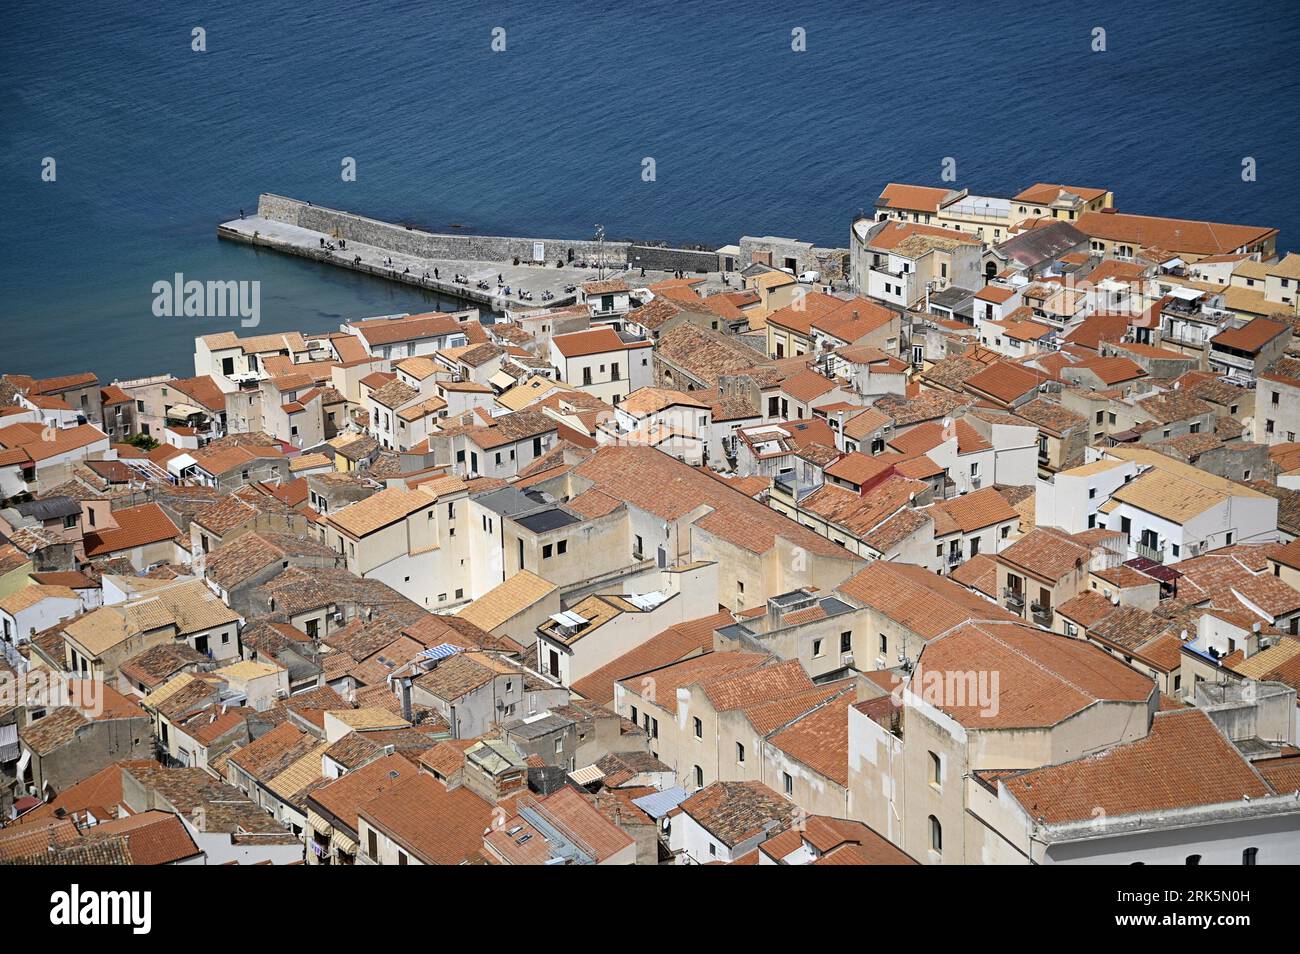 Paesaggio con vista panoramica di Cefalù, uno dei borghi più belli e pittoreschi della costa settentrionale della Sicilia, Italia. Foto Stock